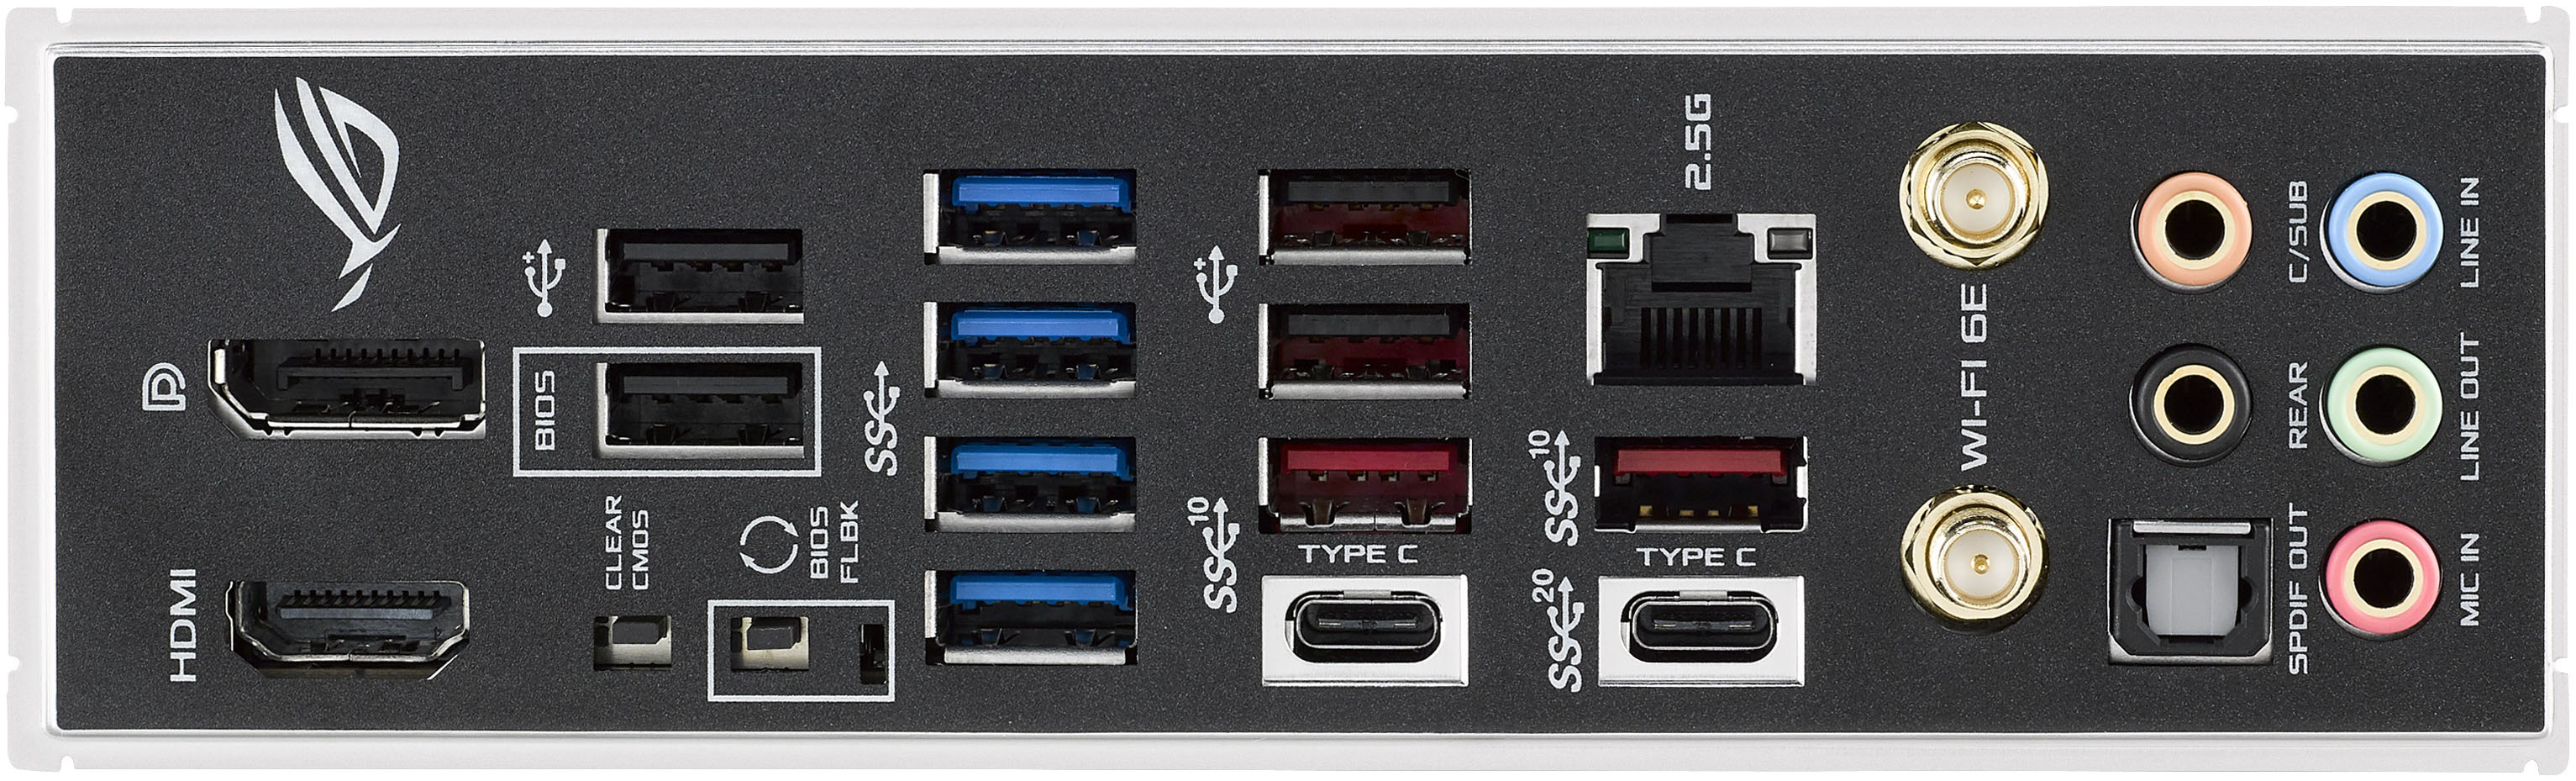 Součástí základní desky Asus ROG Strix Z690-E jsou také 2 univerzální konektory Thunderbolt 4, které spojují ohromnou šířku pásma s mimořádnou všestranností standardu USB-C